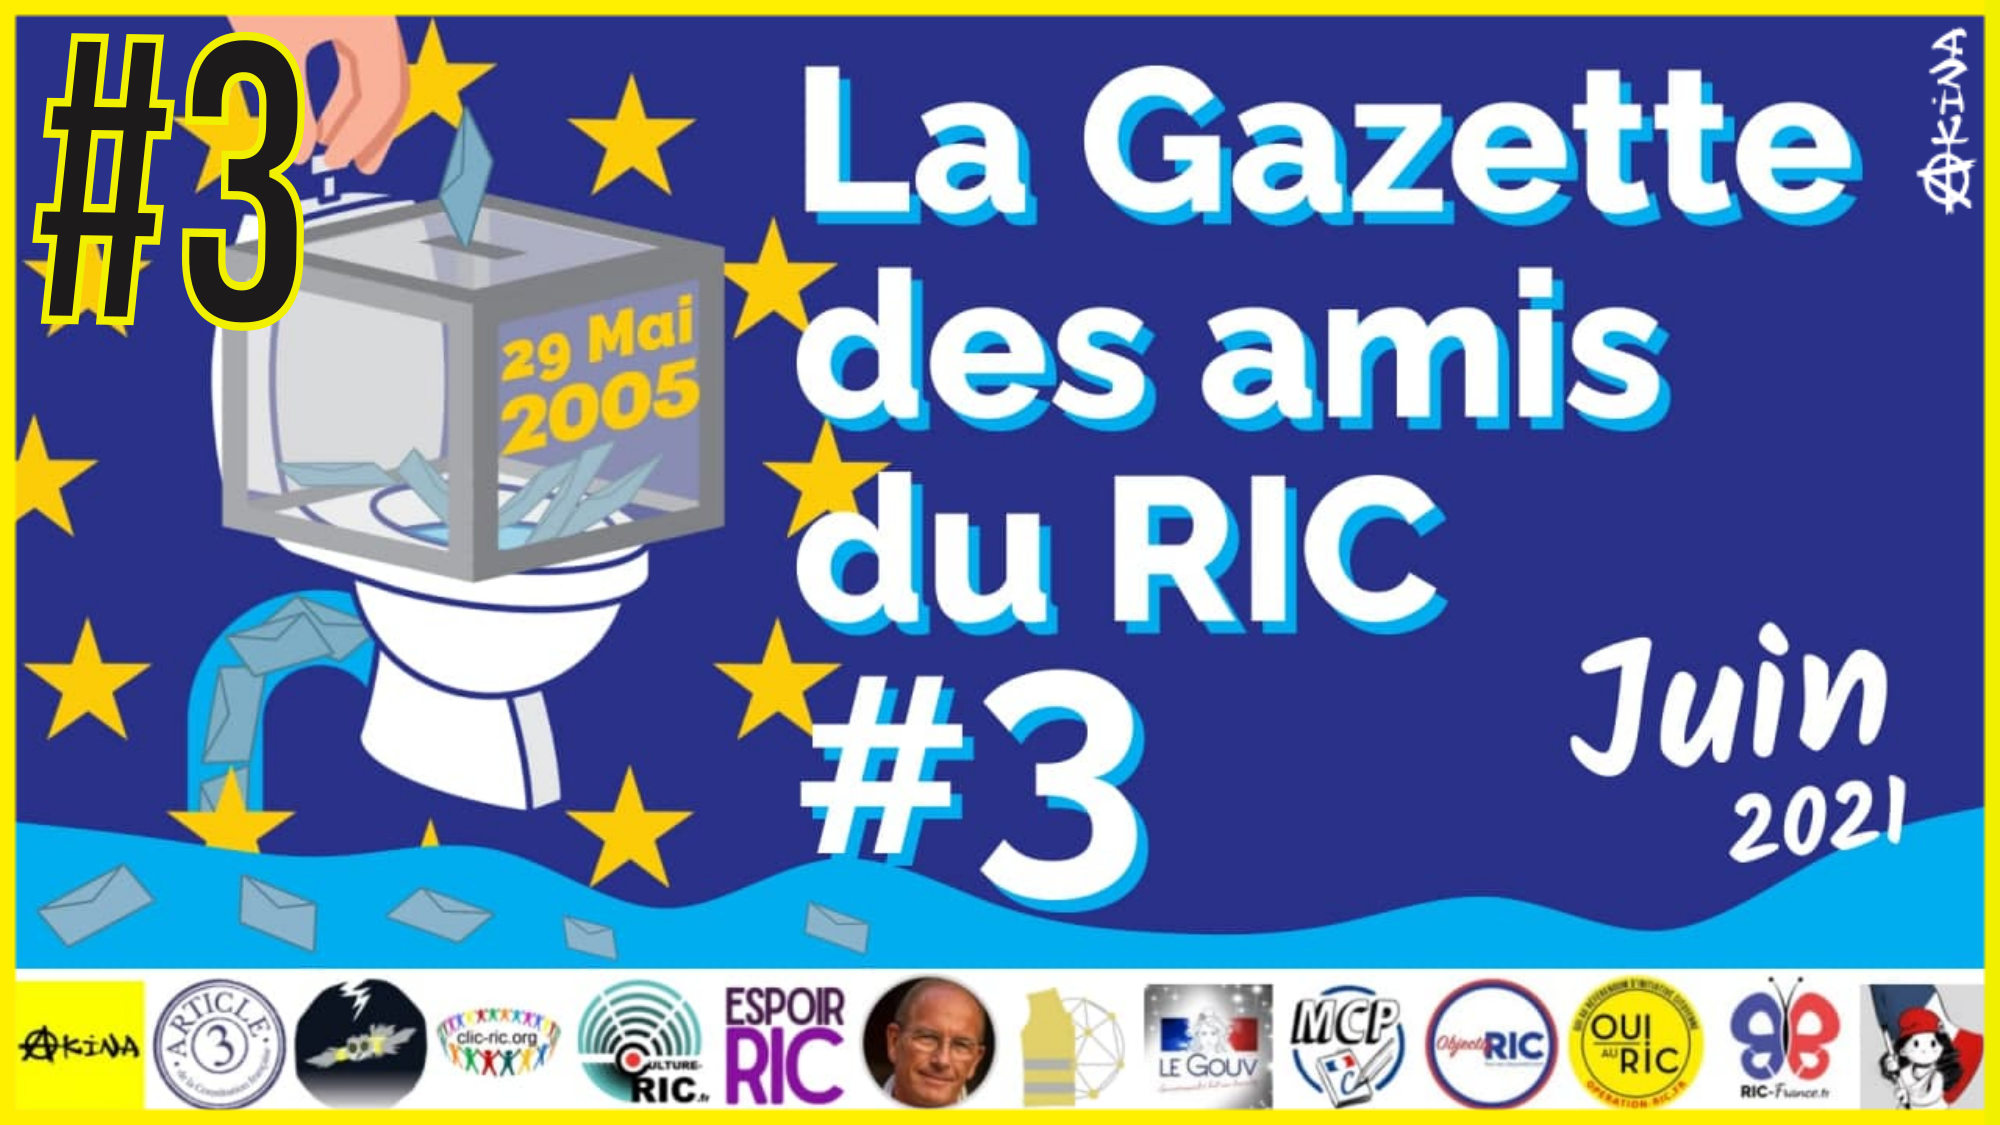 📰 La Gazette des amis du RIC #3 📅 Juin 2021 🗣 Akina